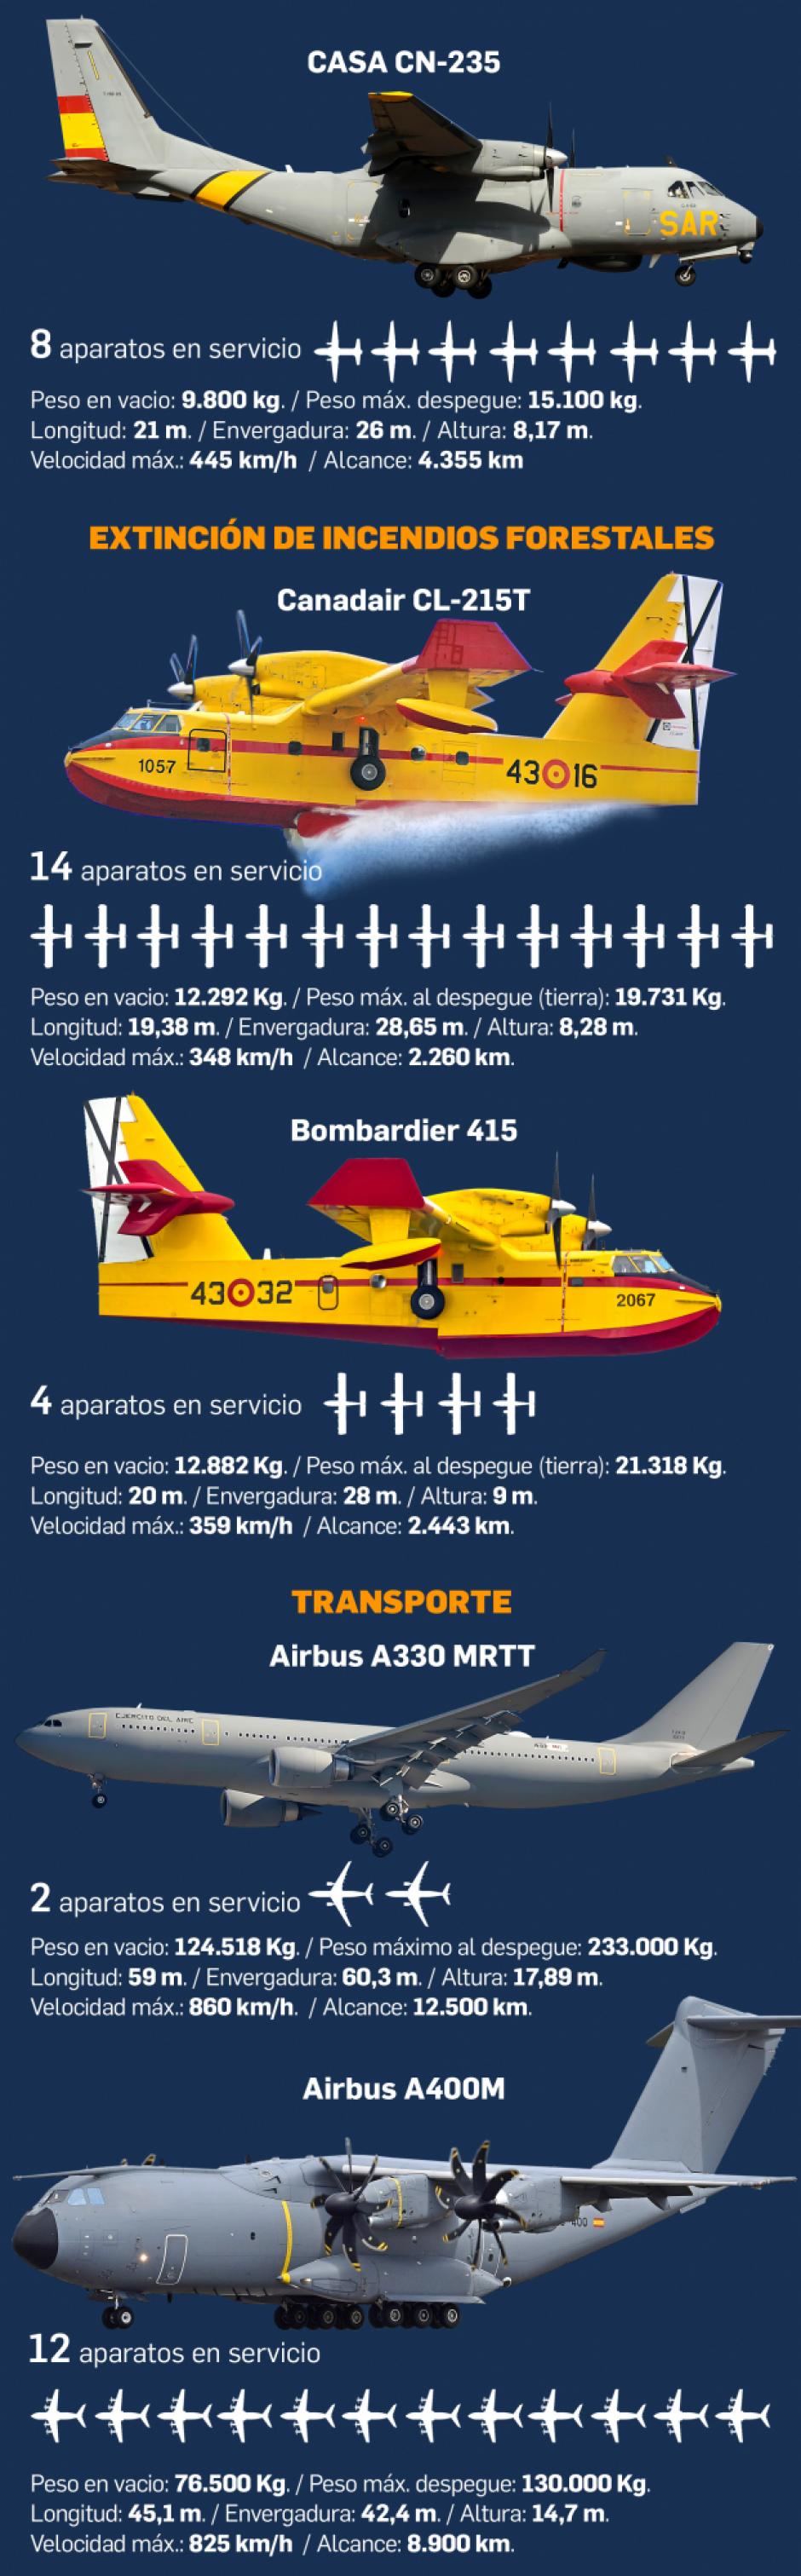 Fuerzas Aéreas españolas